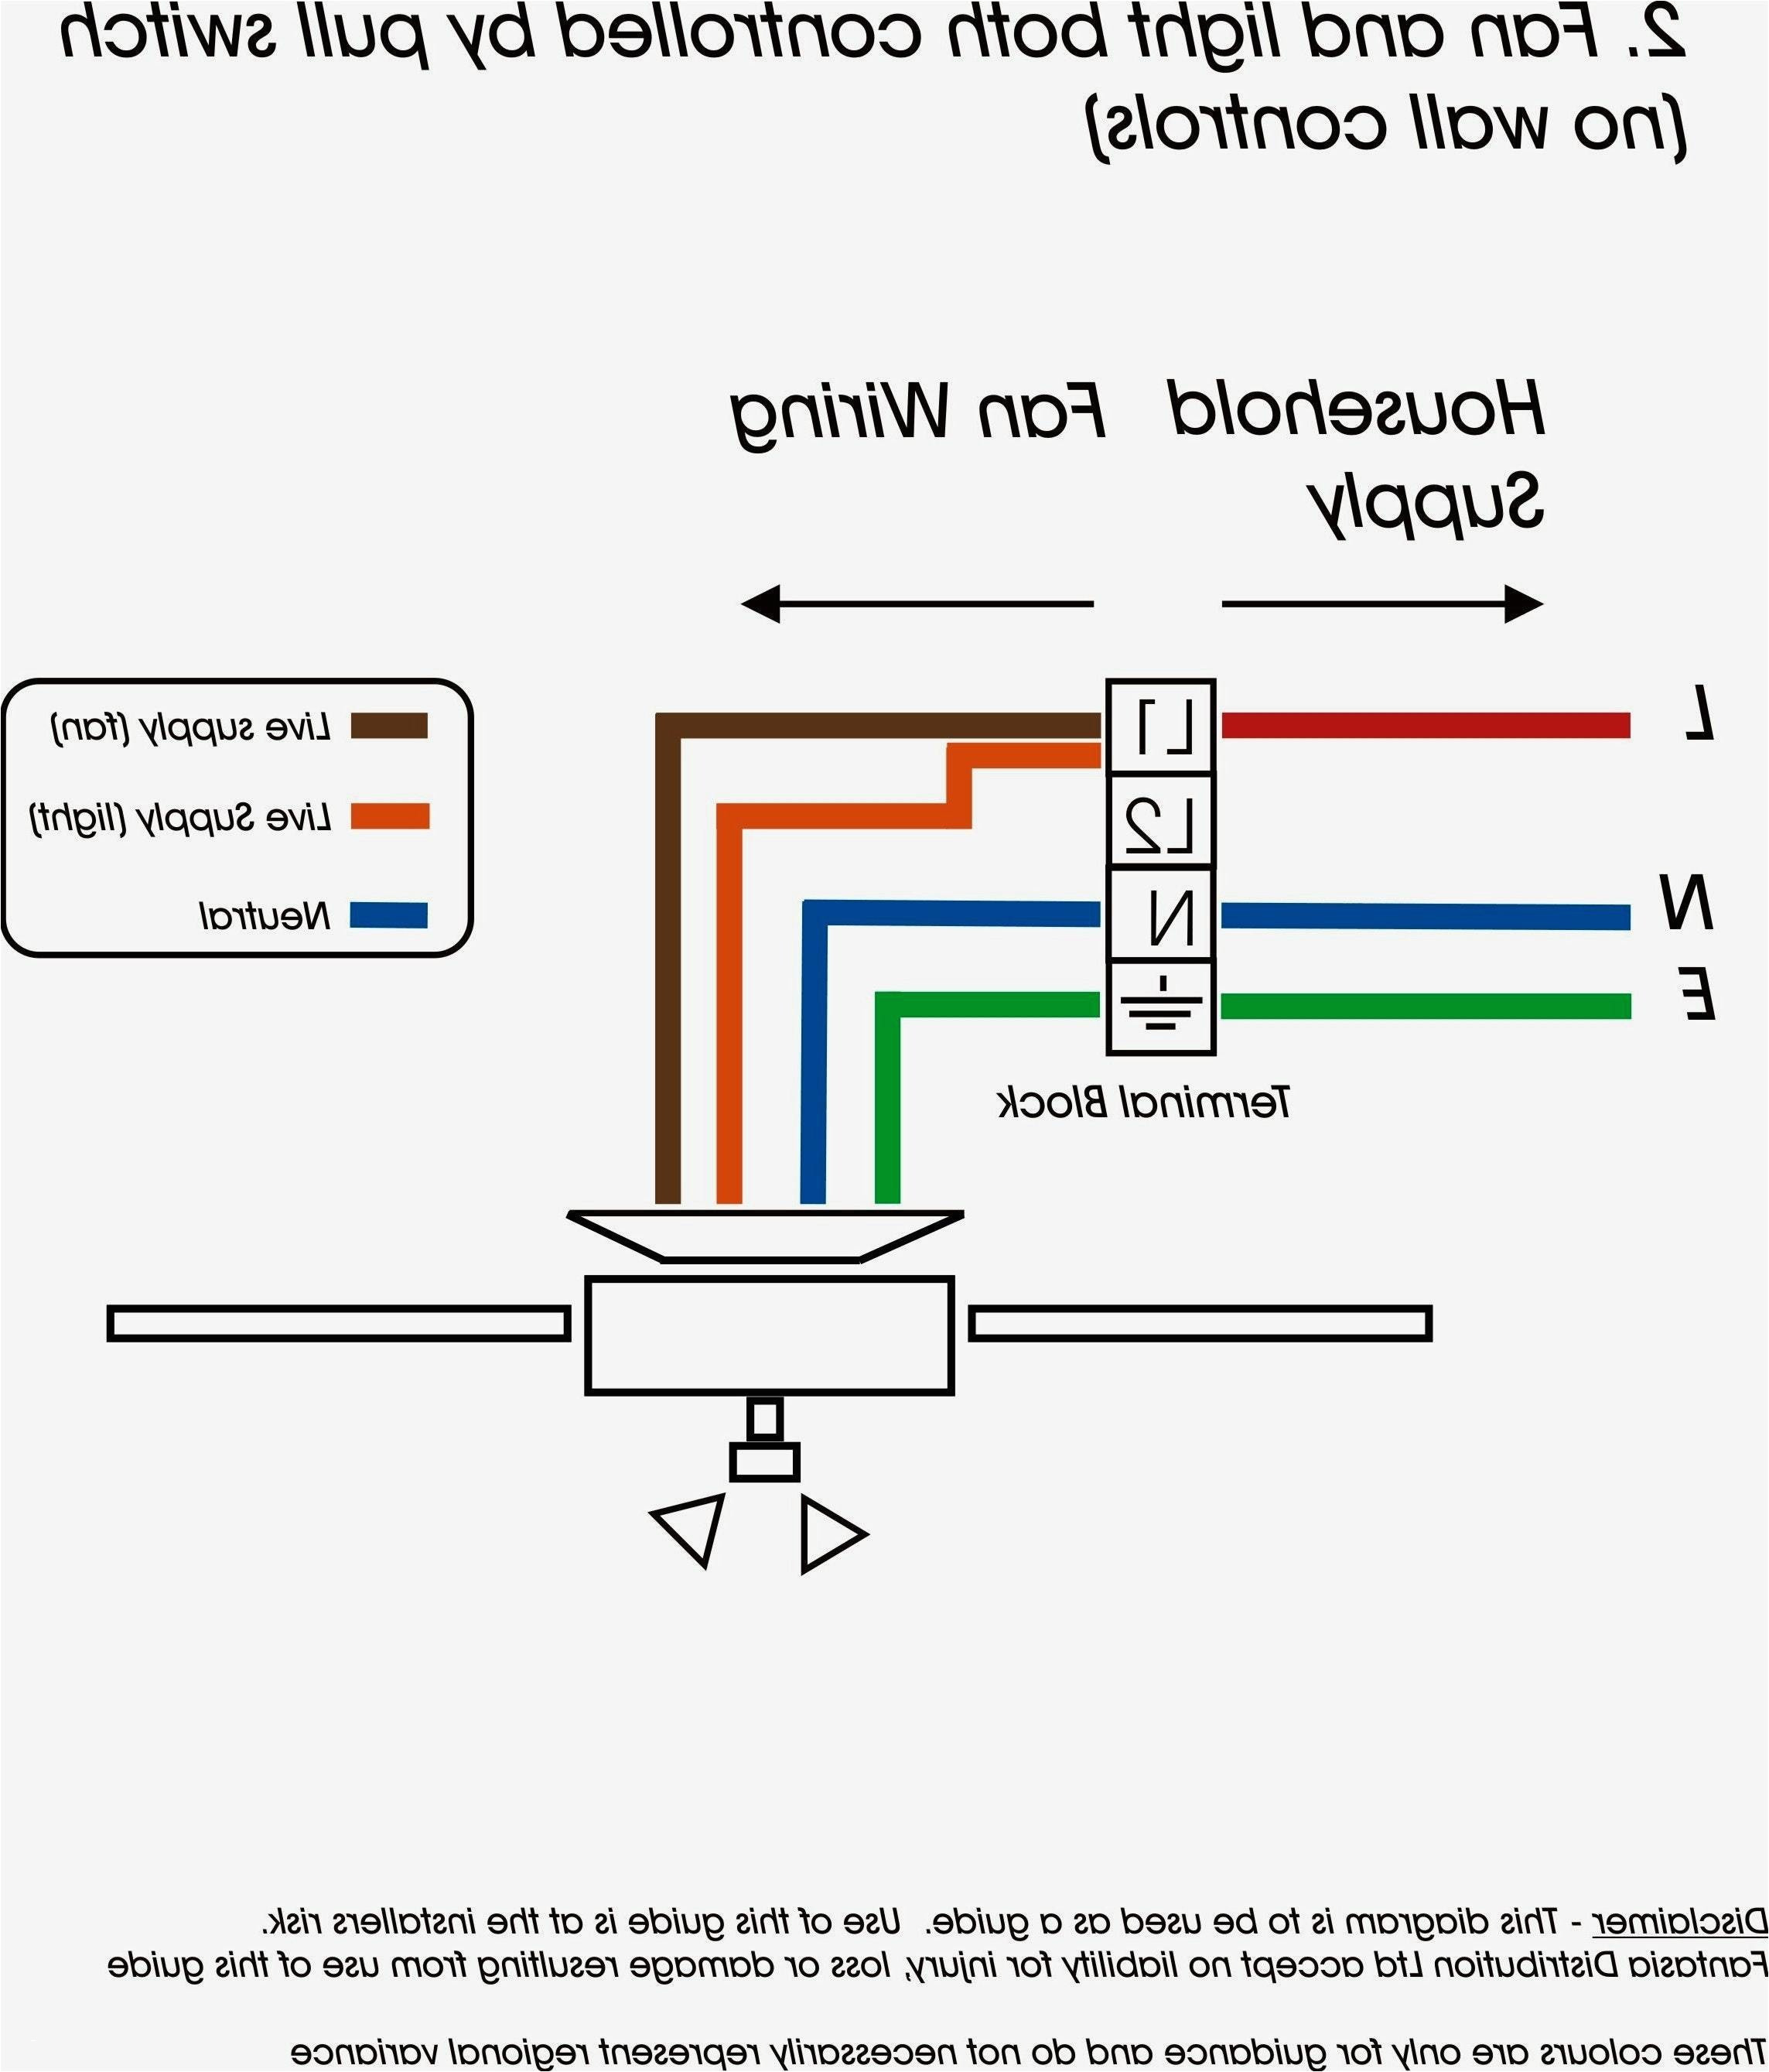 add a phase wiring diagram wiring diagram blog ronk add a phase wiring diagram add a phase wiring diagram